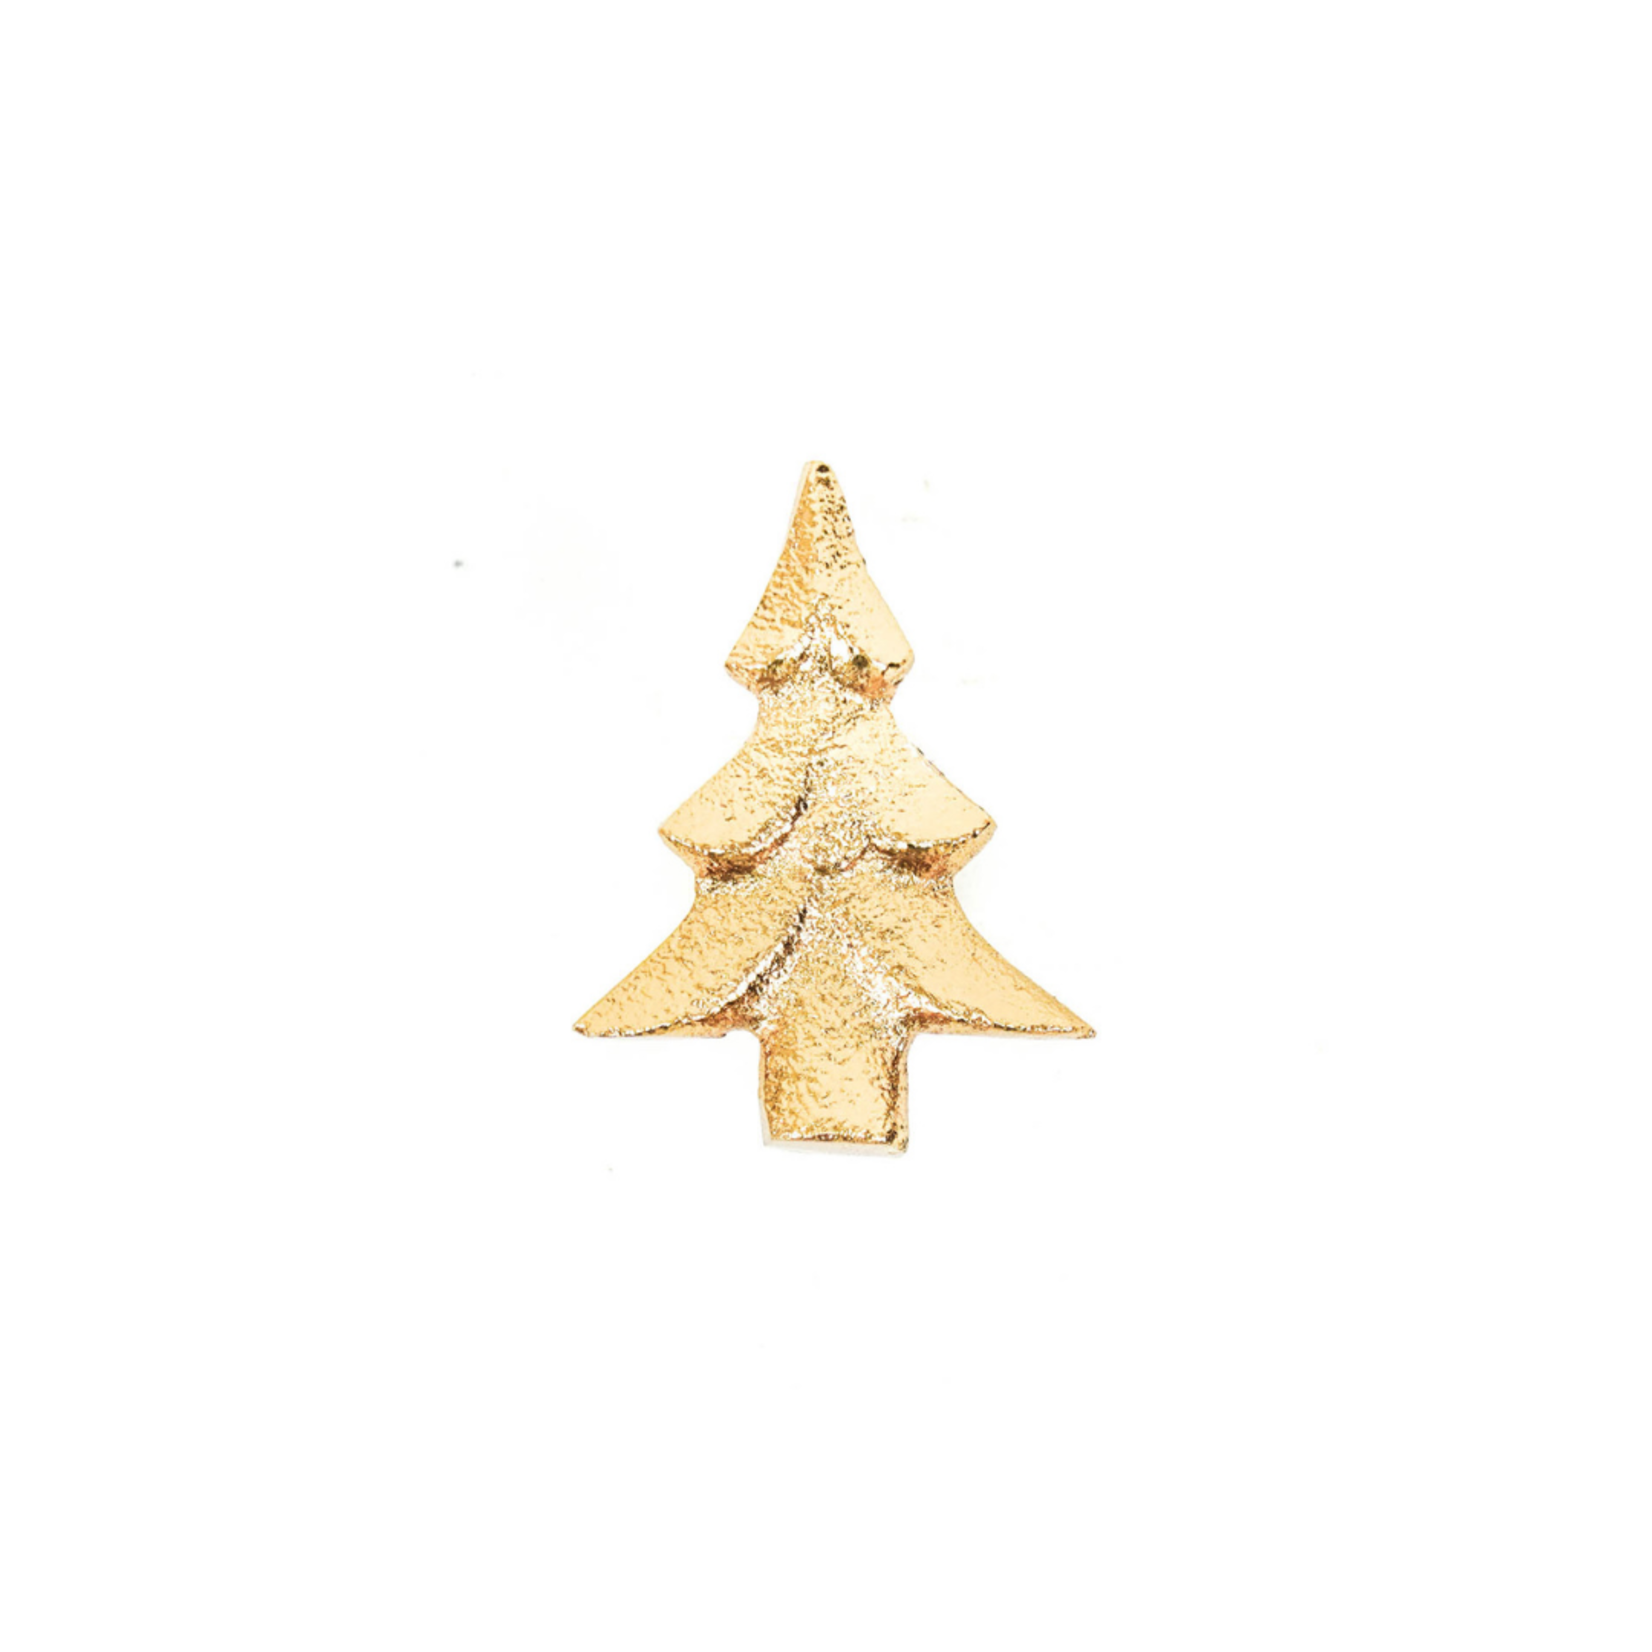 Housevitamin Kaarspin kerstboom goud